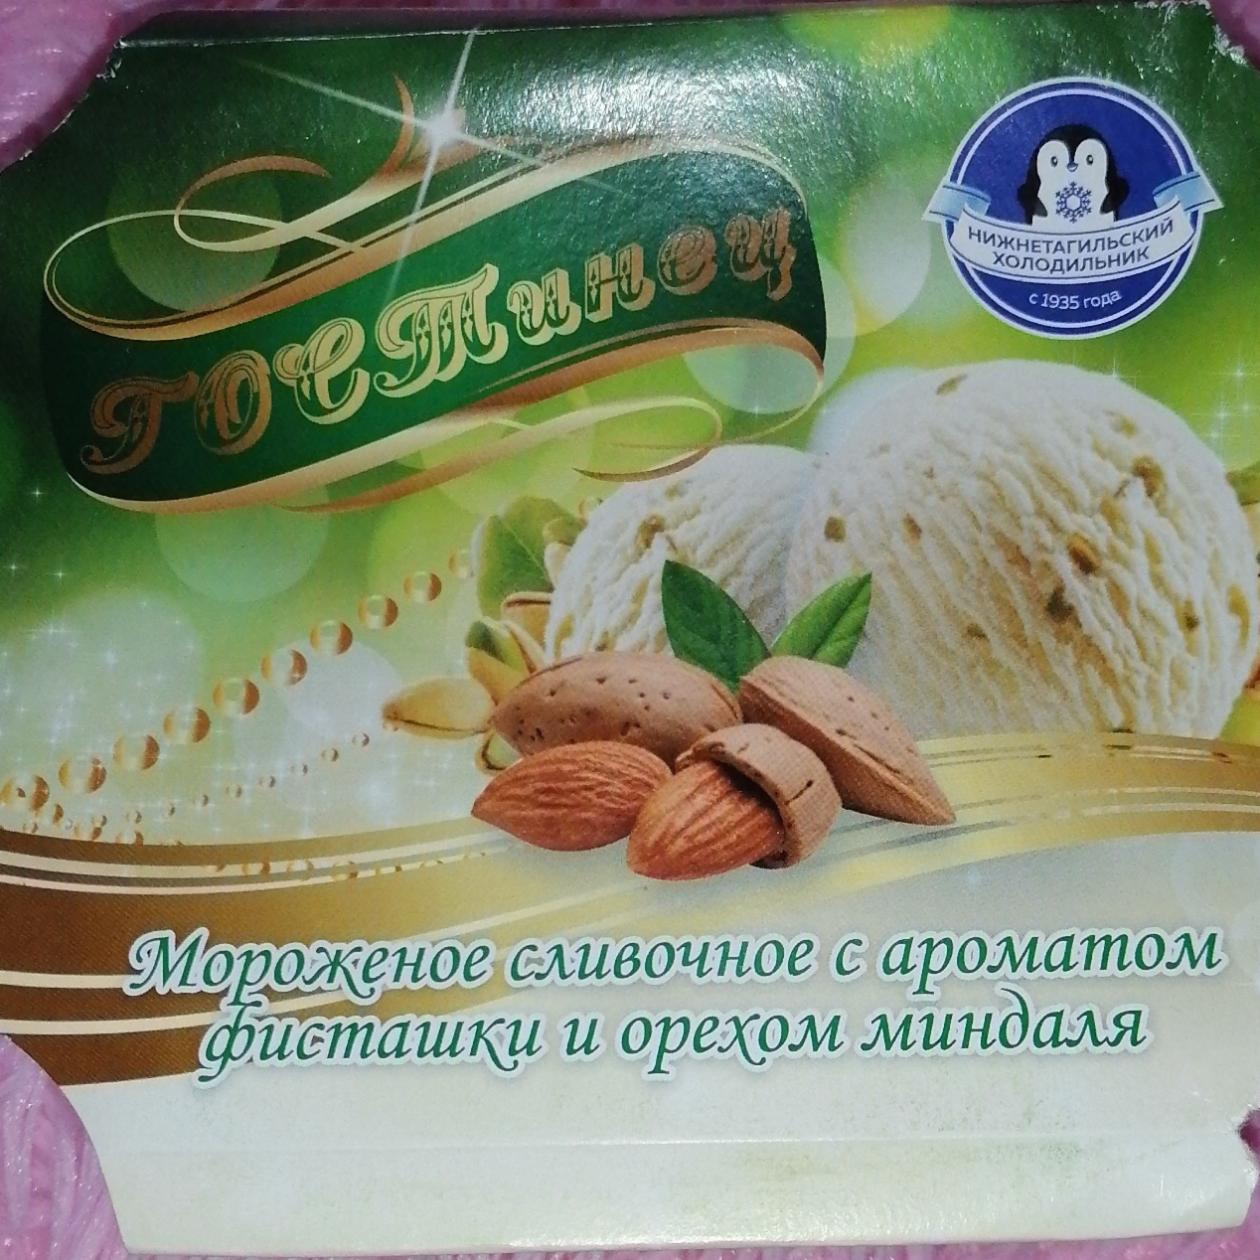 Фото - Мороженое сливочное с ароматом фисташки и орехом миндаля ГОСТинец Нижнетагильский холодильник